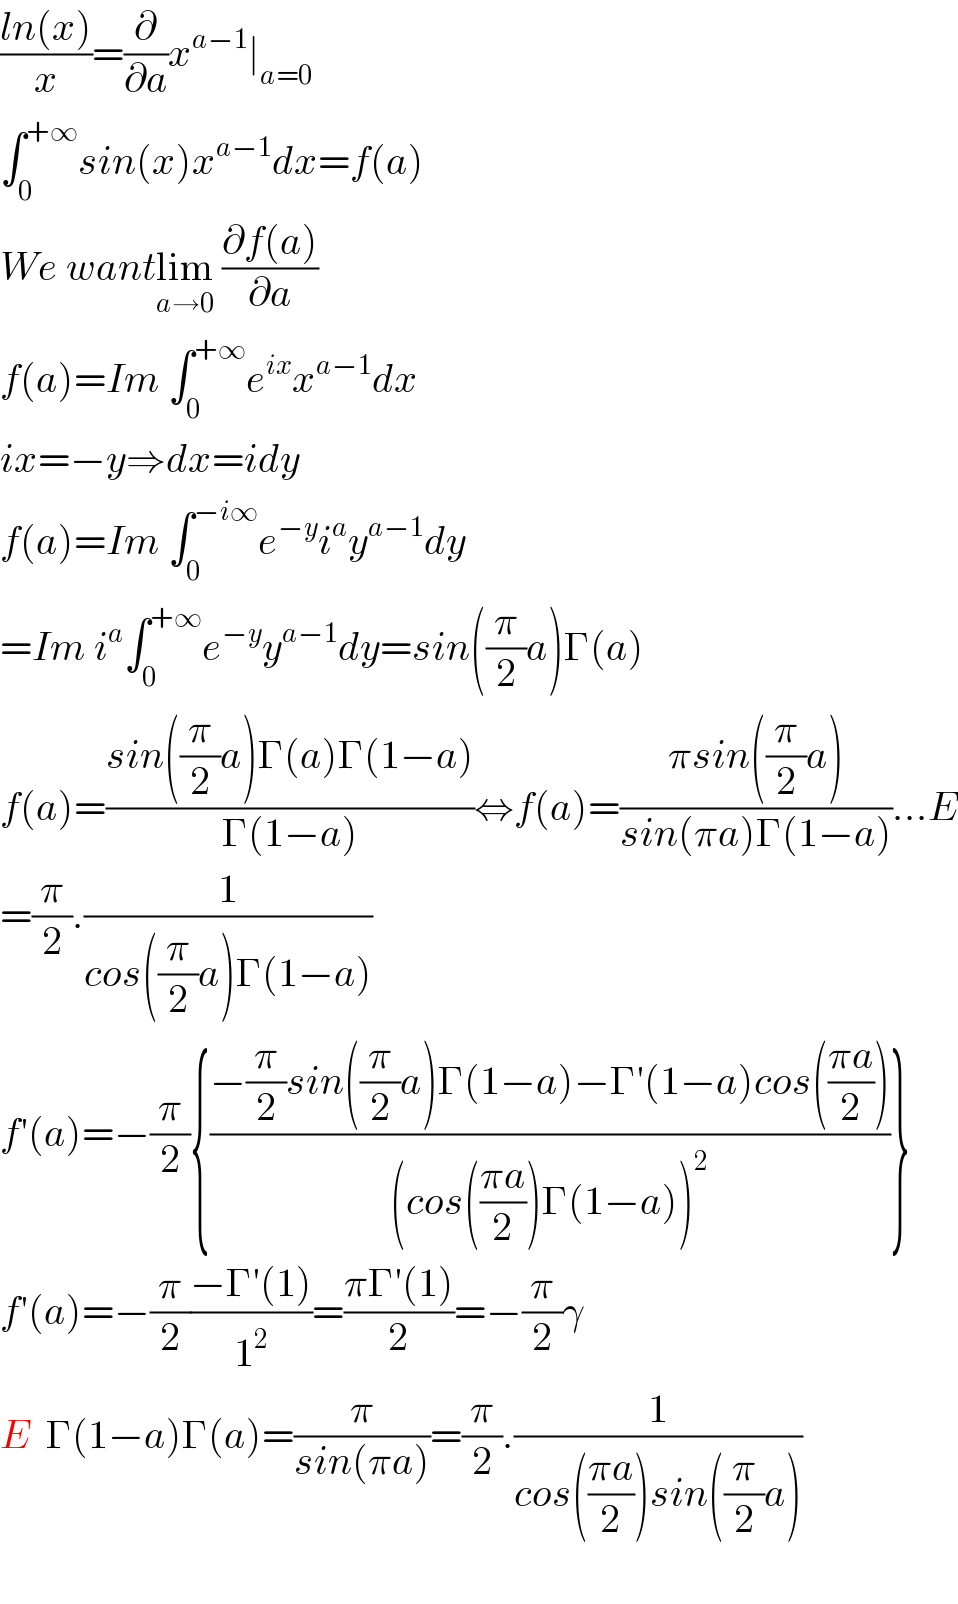 ((ln(x))/x)=(∂/∂a)x^(a−1) ∣_(a=0)   ∫_0 ^(+∞) sin(x)x^(a−1) dx=f(a)  We wantlim_(a→0)  ((∂f(a))/∂a)  f(a)=Im ∫_0 ^(+∞) e^(ix) x^(a−1) dx  ix=−y⇒dx=idy  f(a)=Im ∫_0 ^(−i∞) e^(−y) i^a y^(a−1) dy  =Im i^a ∫_0 ^(+∞) e^(−y) y^(a−1) dy=sin((π/2)a)Γ(a)  f(a)=((sin((π/2)a)Γ(a)Γ(1−a))/(Γ(1−a)))⇔f(a)=((πsin((π/2)a))/(sin(πa)Γ(1−a)))...E  =(π/2).(1/(cos((π/2)a)Γ(1−a)))  f′(a)=−(π/2){((−(π/2)sin((π/2)a)Γ(1−a)−Γ′(1−a)cos(((πa)/2)))/((cos(((πa)/2))Γ(1−a))^2 ))}  f′(a)=−(π/2)((−Γ′(1))/1^2 )=((πΓ′(1))/2)=−(π/2)γ  E  Γ(1−a)Γ(a)=(π/(sin(πa)))=(π/2).(1/(cos(((πa)/2))sin((π/2)a)))    